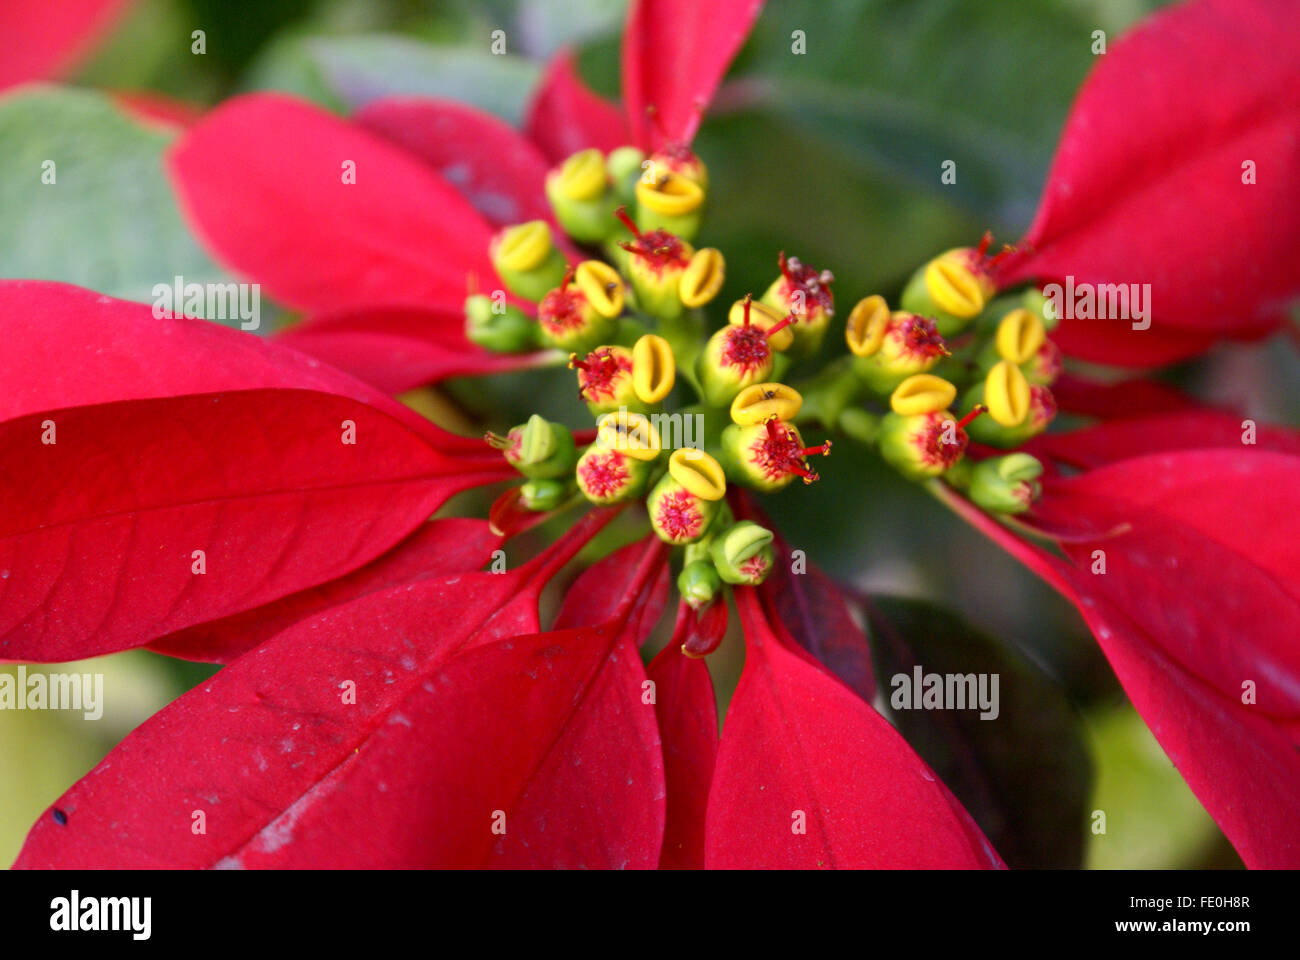 Euphorbia pulcherrima, Poinsettia, arbustive ornamentali con rosso superiore foglie giallo circostante cyathia, popolare impianto di Natale Foto Stock